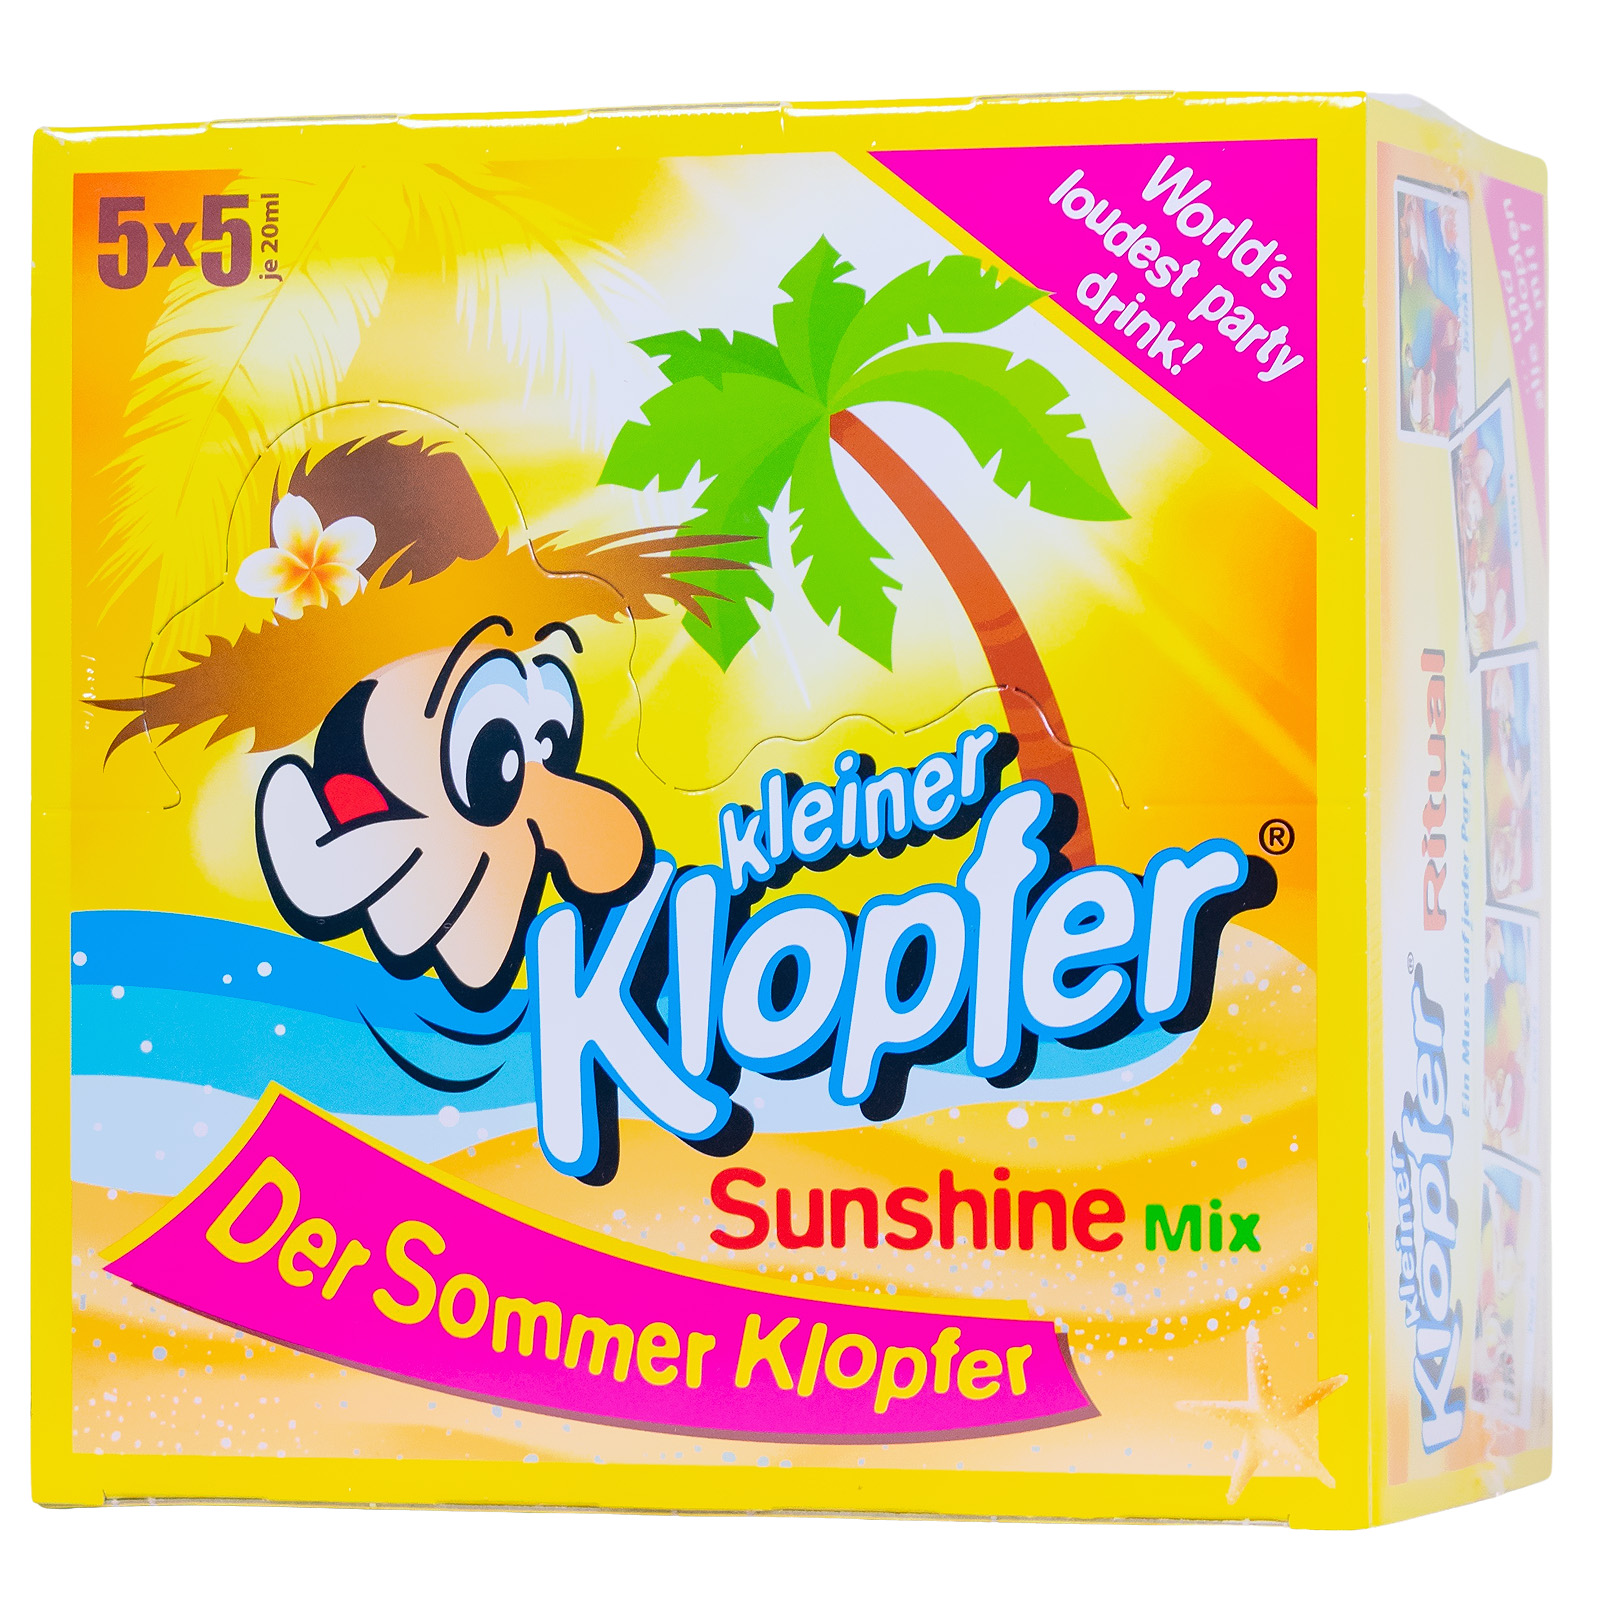 Mix-Paket [25 x 0,02L] Kleiner Klopfer Sunshine Mix - 0,5L 15% vol